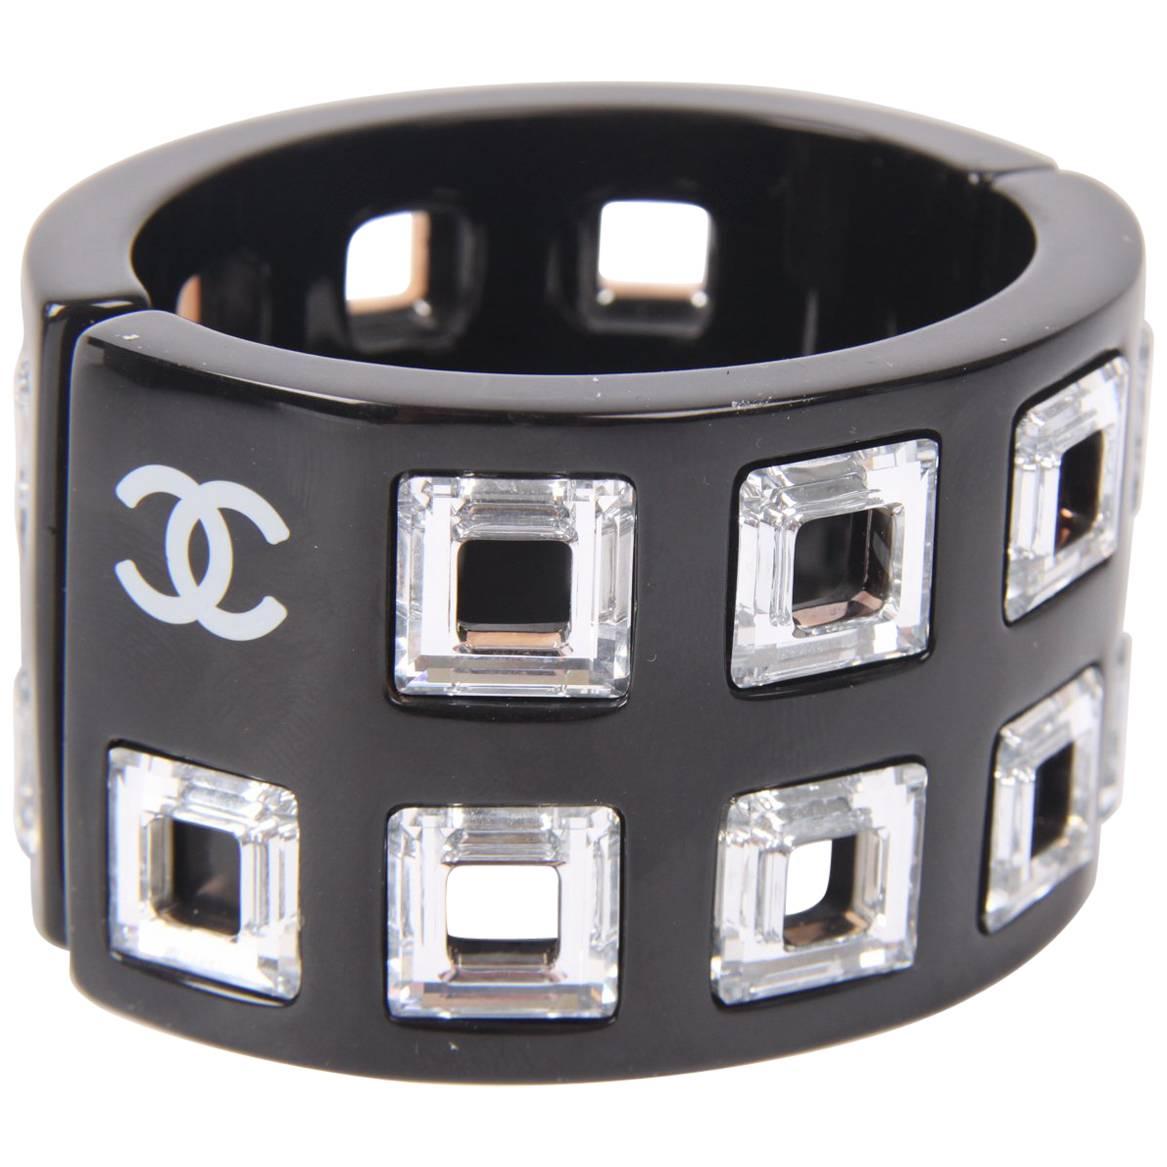 Chanel Black & White Resin Crystal Cube Bracelet 2006